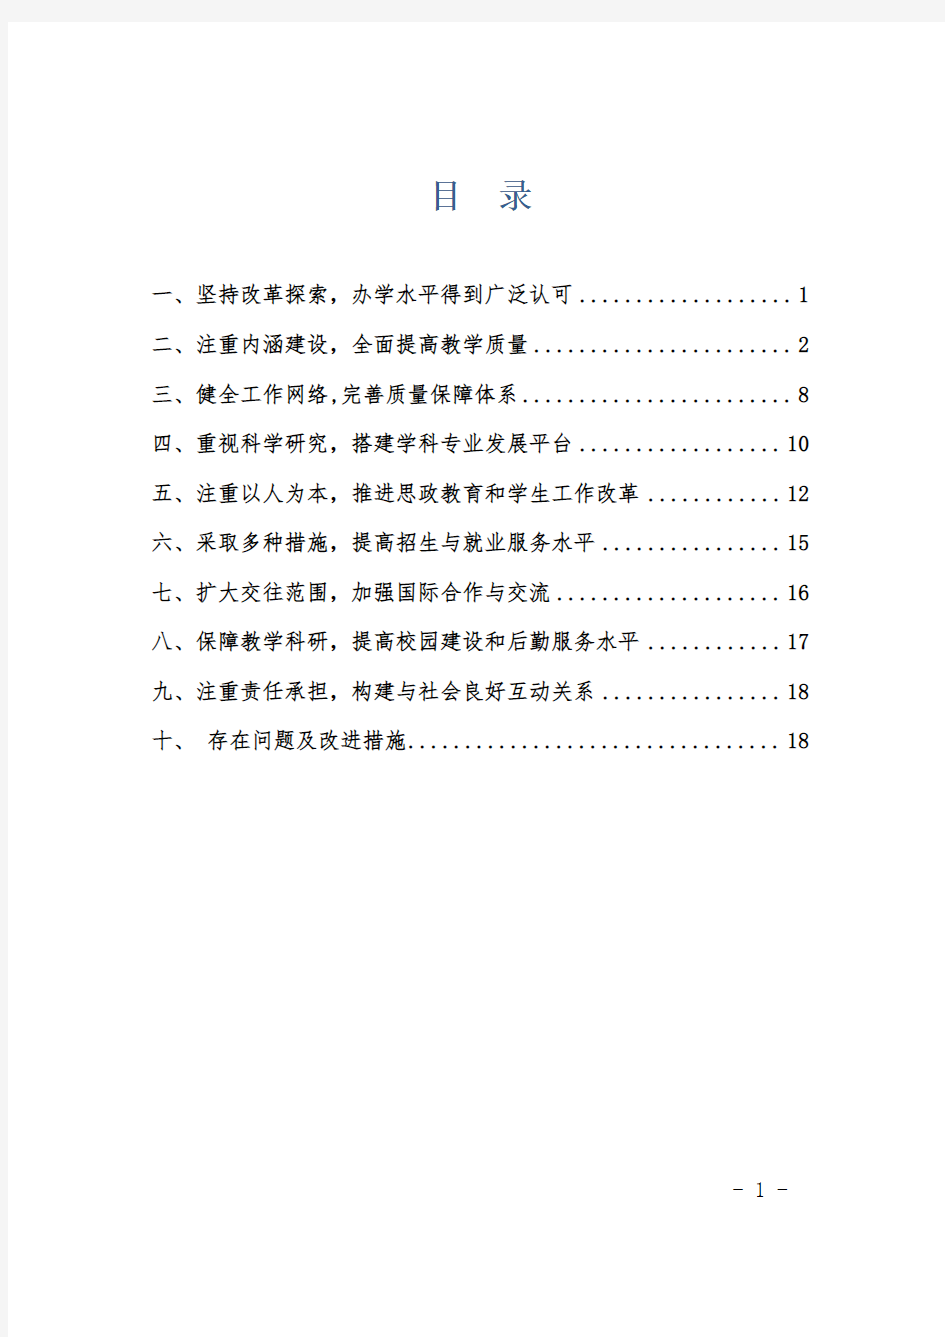 上海杉达学院2013年度本科教学质量报告